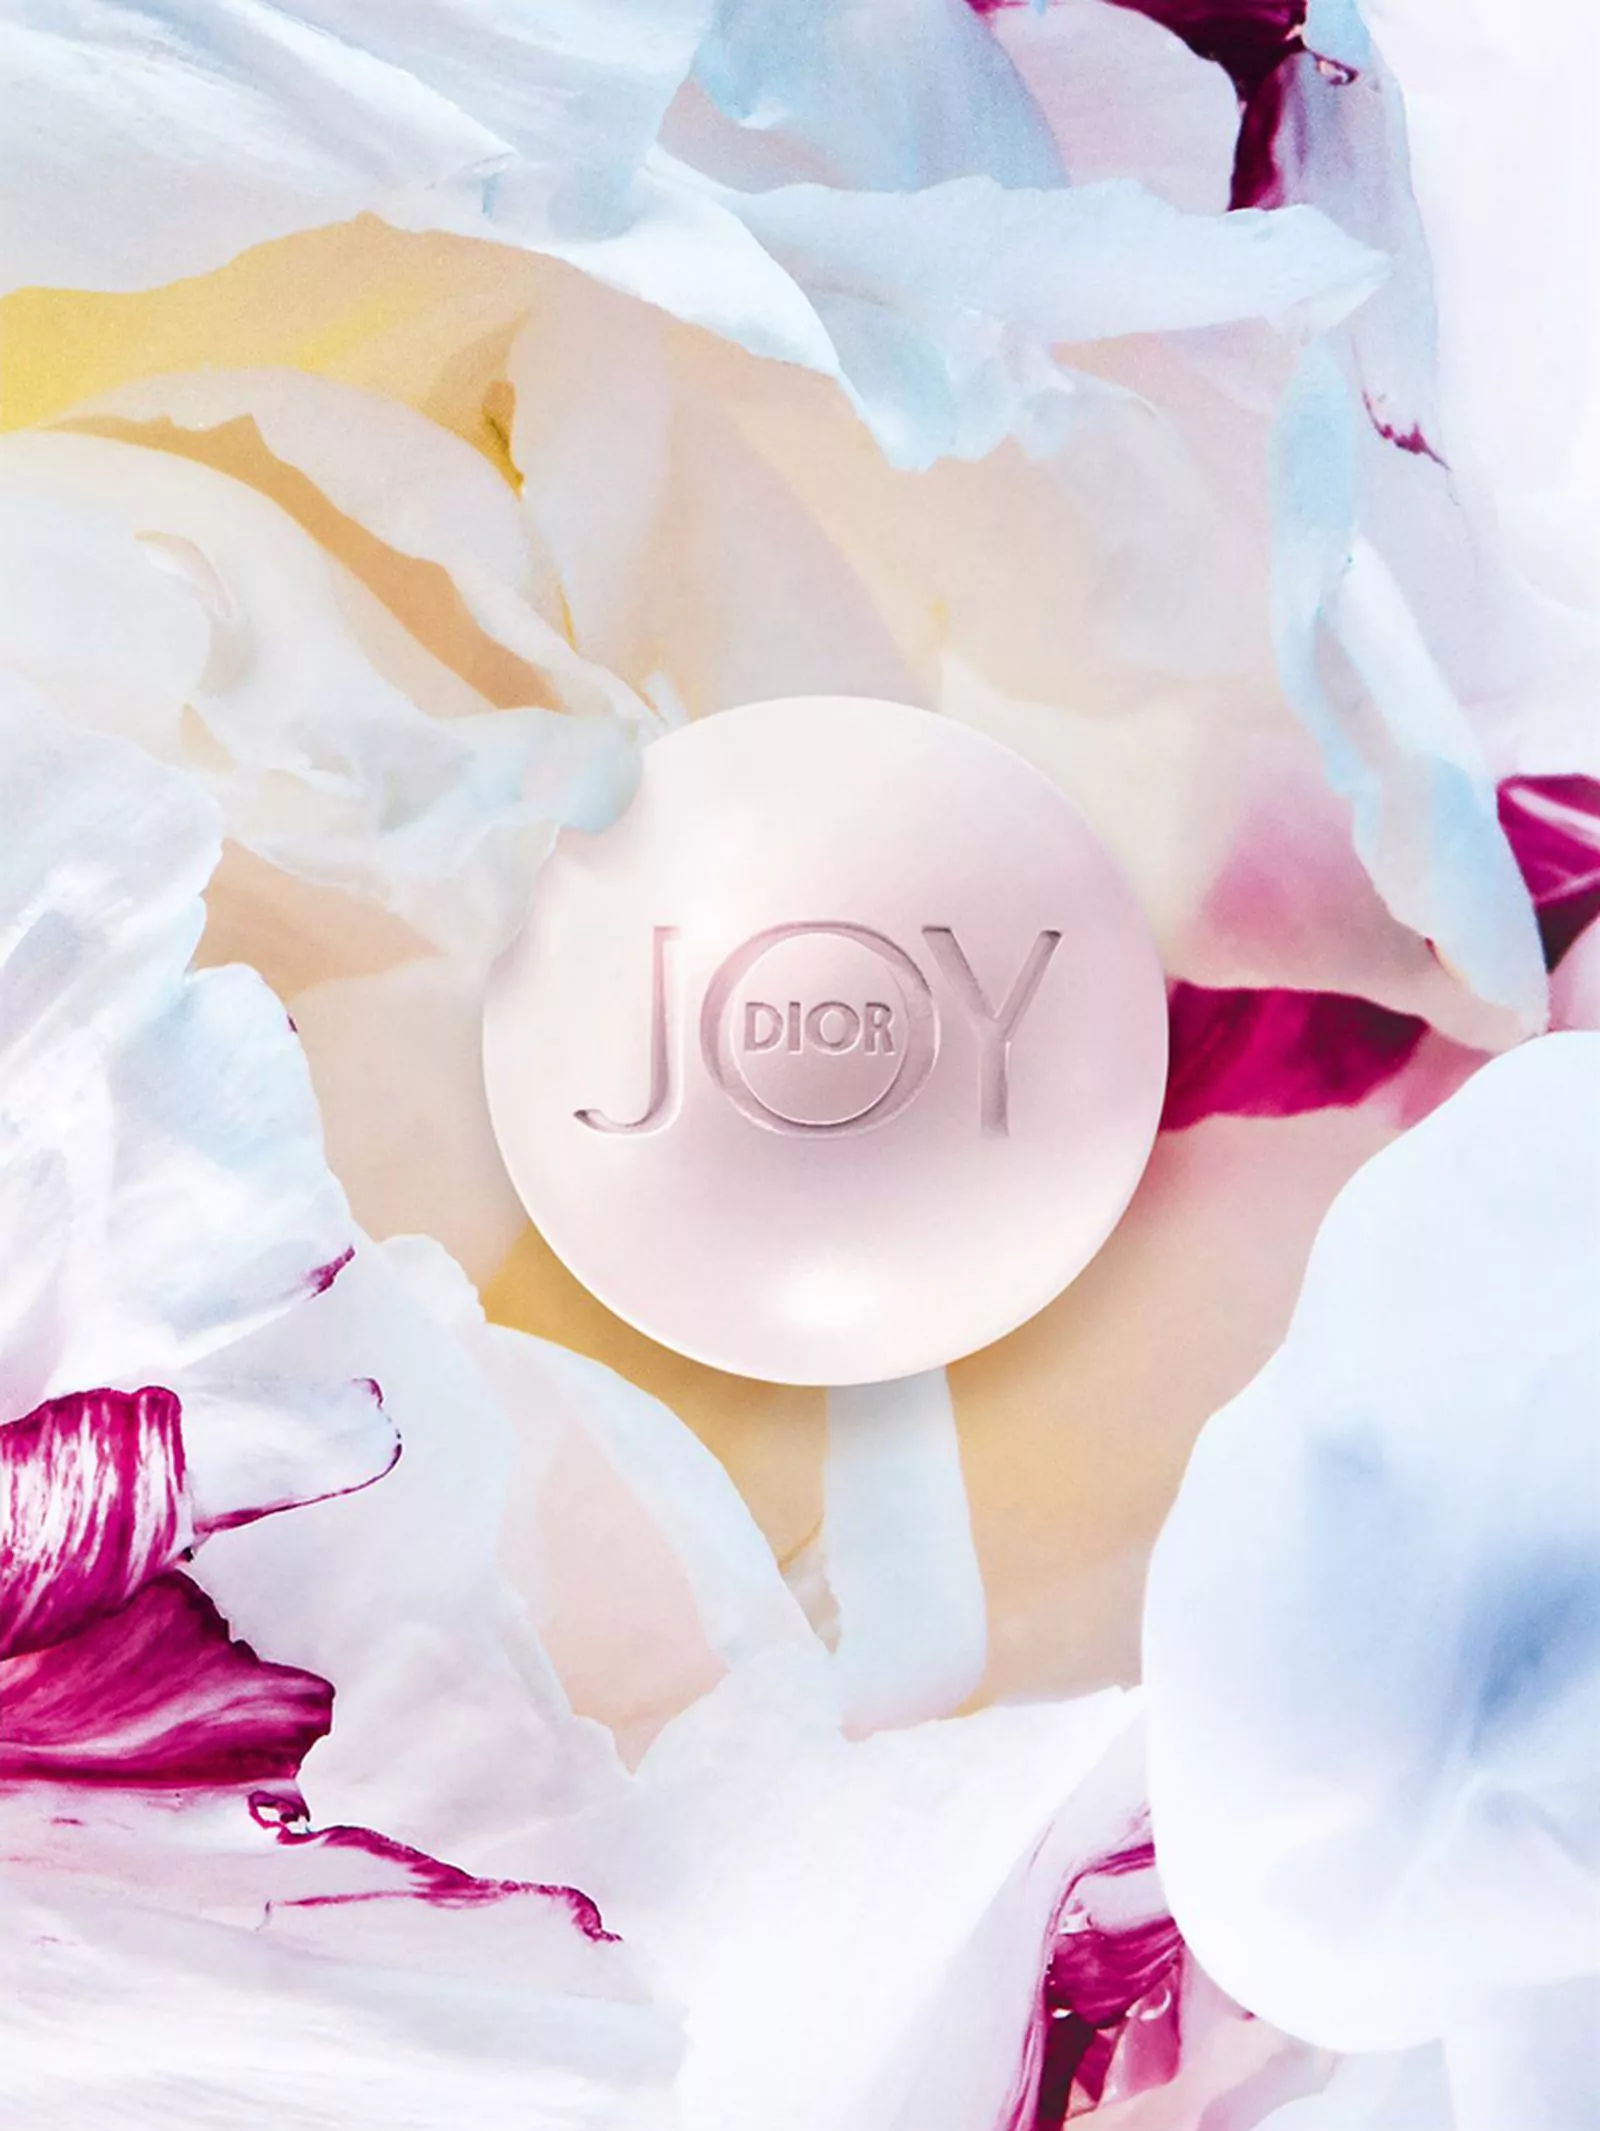 душистое мыло Joy by Dior с ароматом бесконечного счастья, фото 2